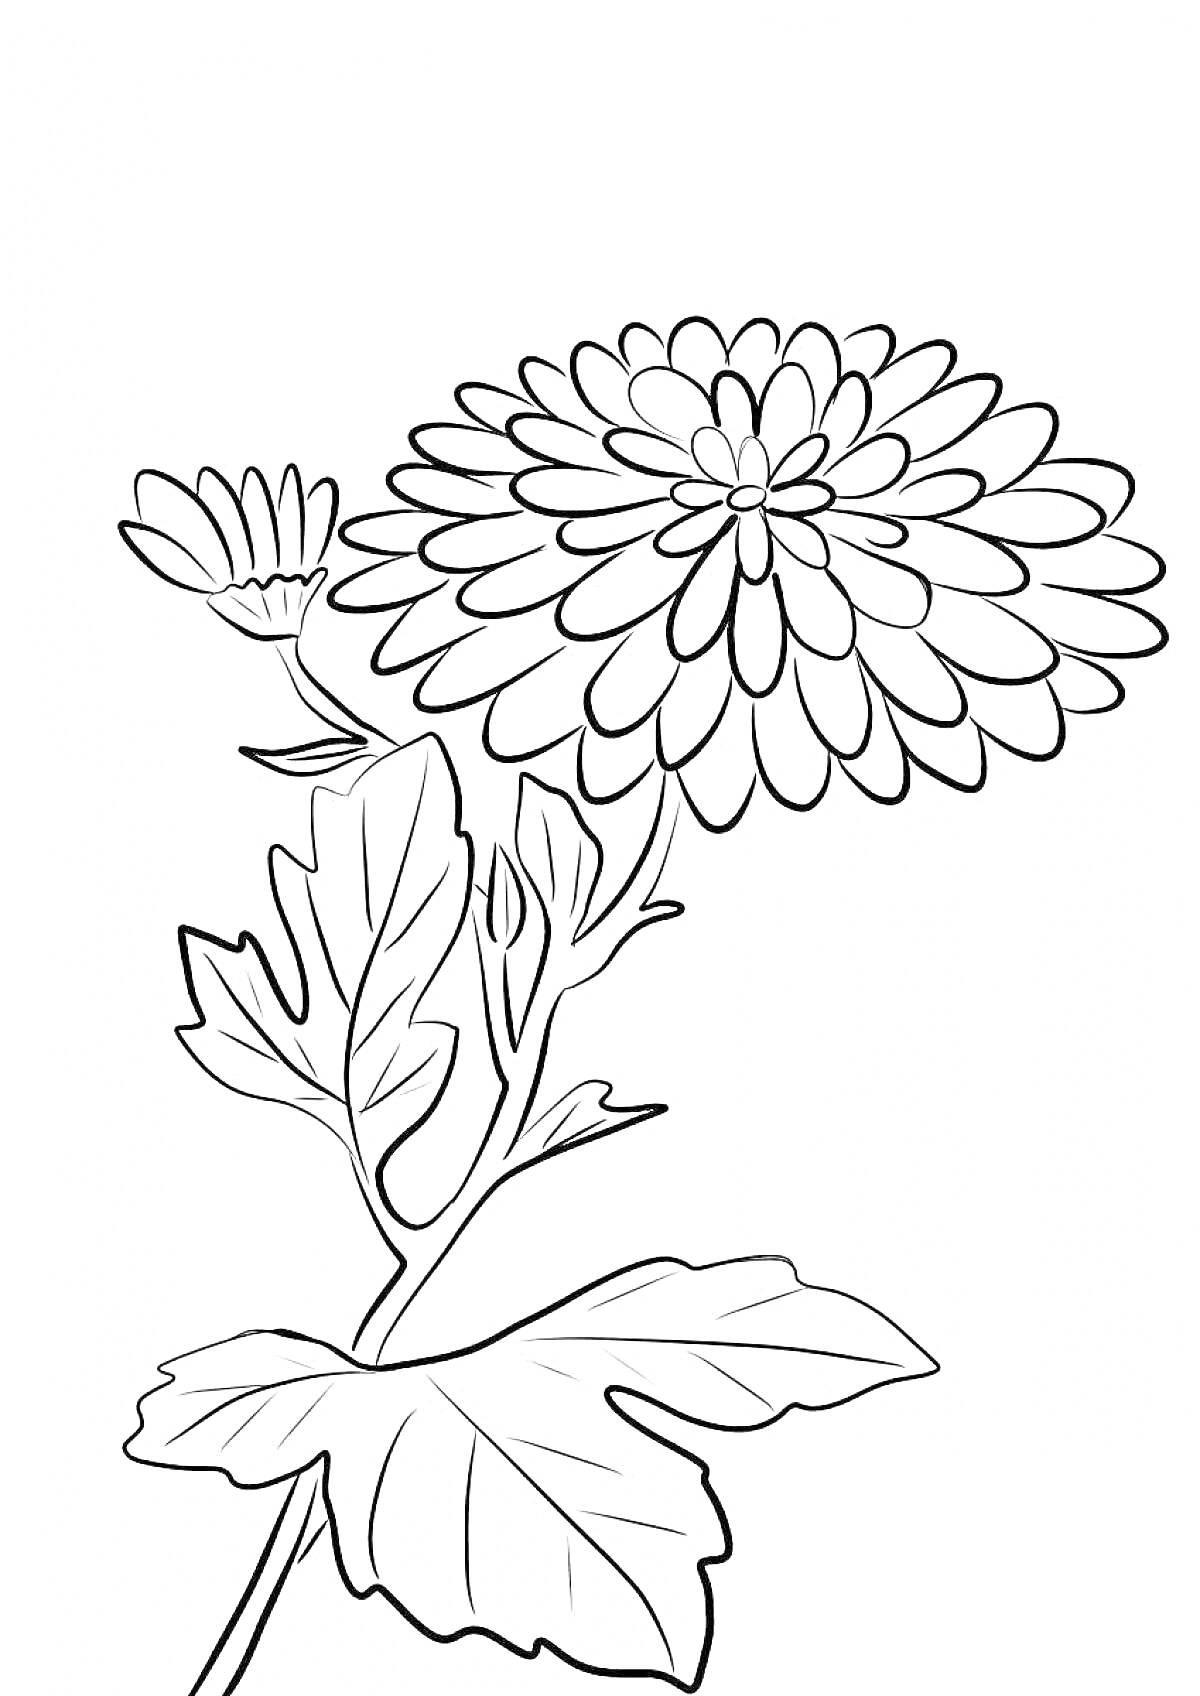 Раскраска хризантема с цветком, бутоном и листьями